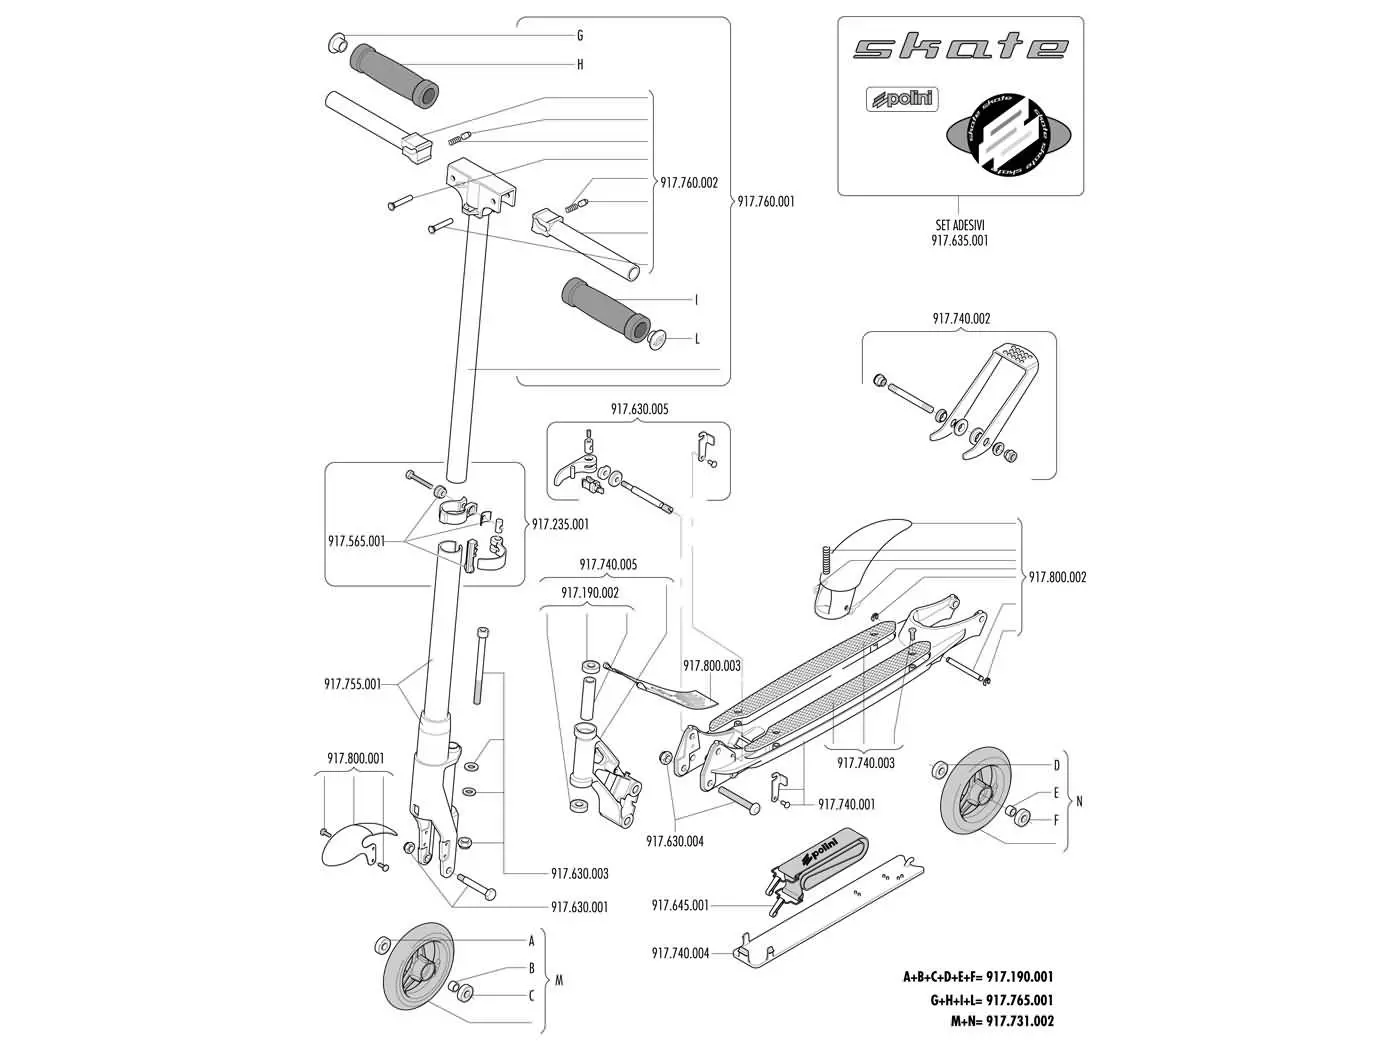 Pin Folding Mechanism Polini Skate City Roller